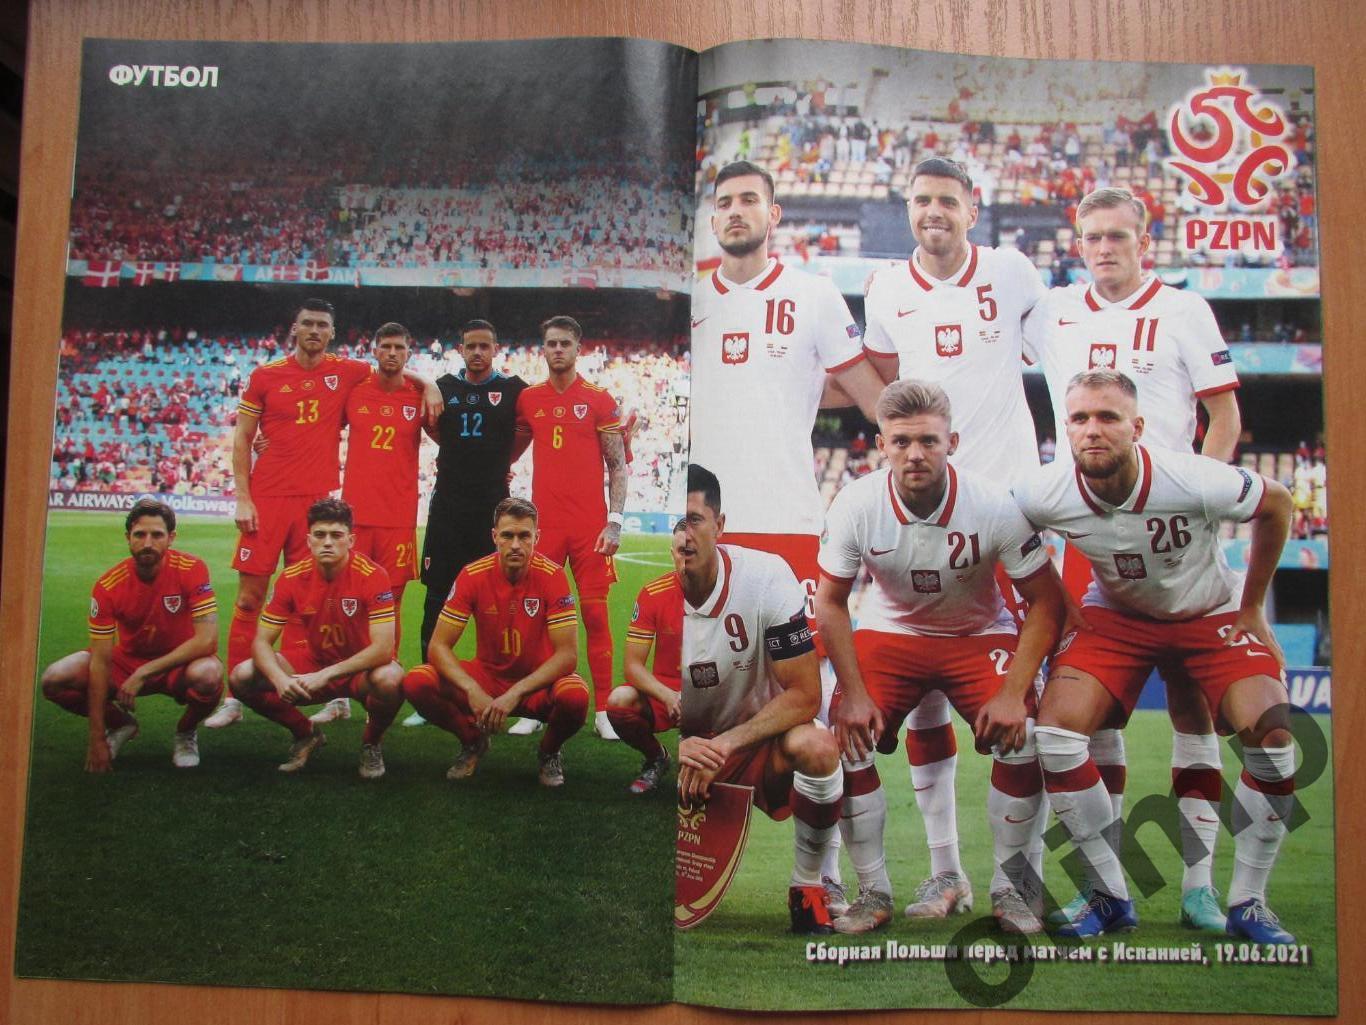 Журнал Футбол №52 07-10.07.2021 , Польша,Испания,Уэльс 2